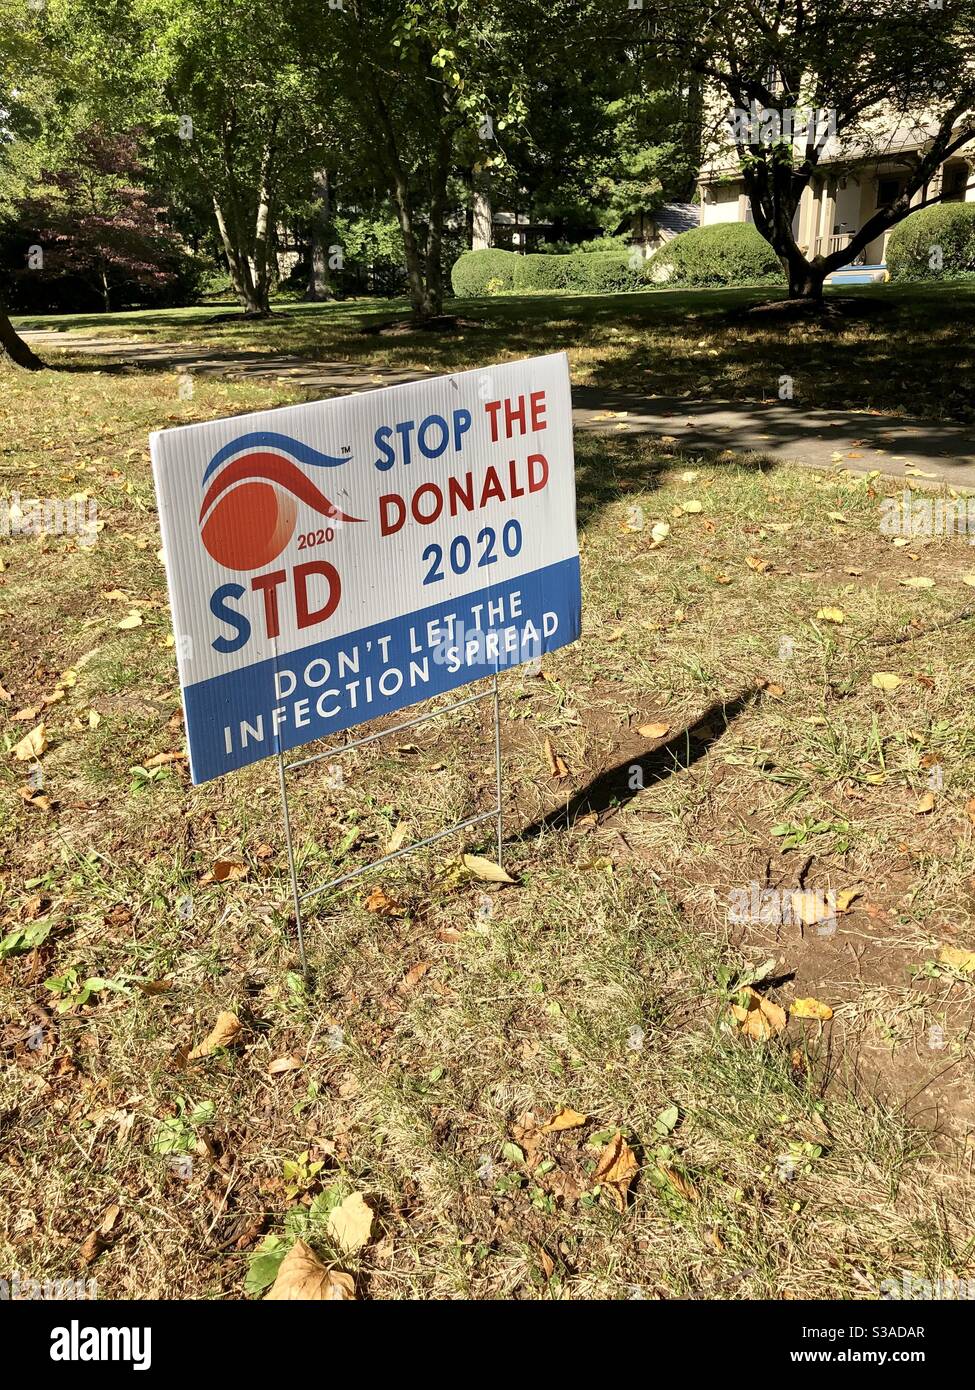 PRINCETON, NJ -Vista di un segnale politico anti-Trump sul prato che dice STD fermare il Donald durante la campagna presidenziale americana del 2020 in un cortile in New Jersey. Foto Stock